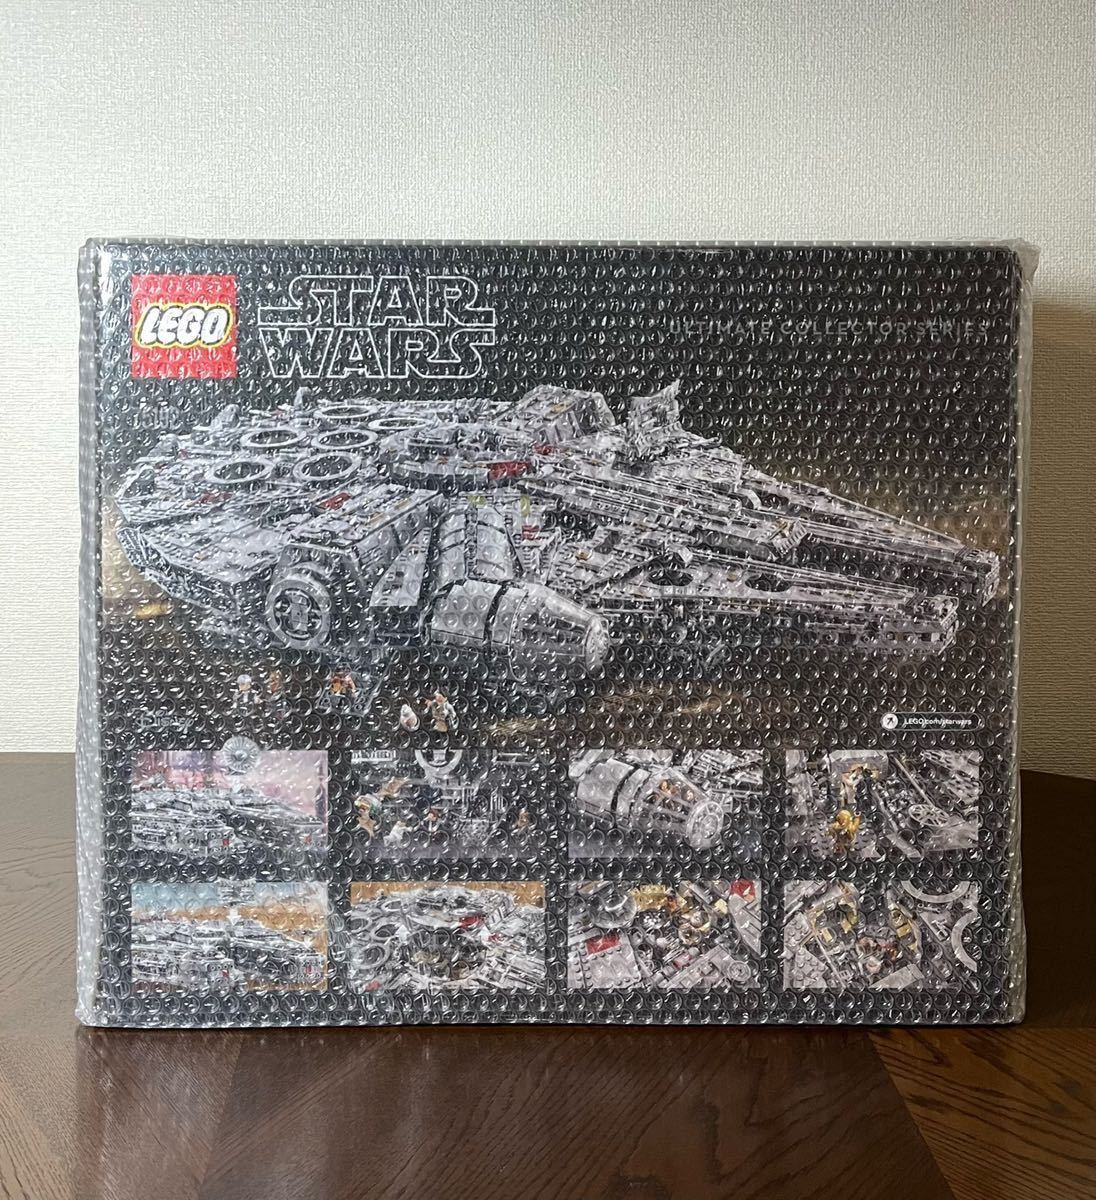 * новый товар Lego Star * War z millenium * Falcon 75192 ( Ultimate * collector * серии ) нераспечатанный стандартный товар Lego Star Wars UCS